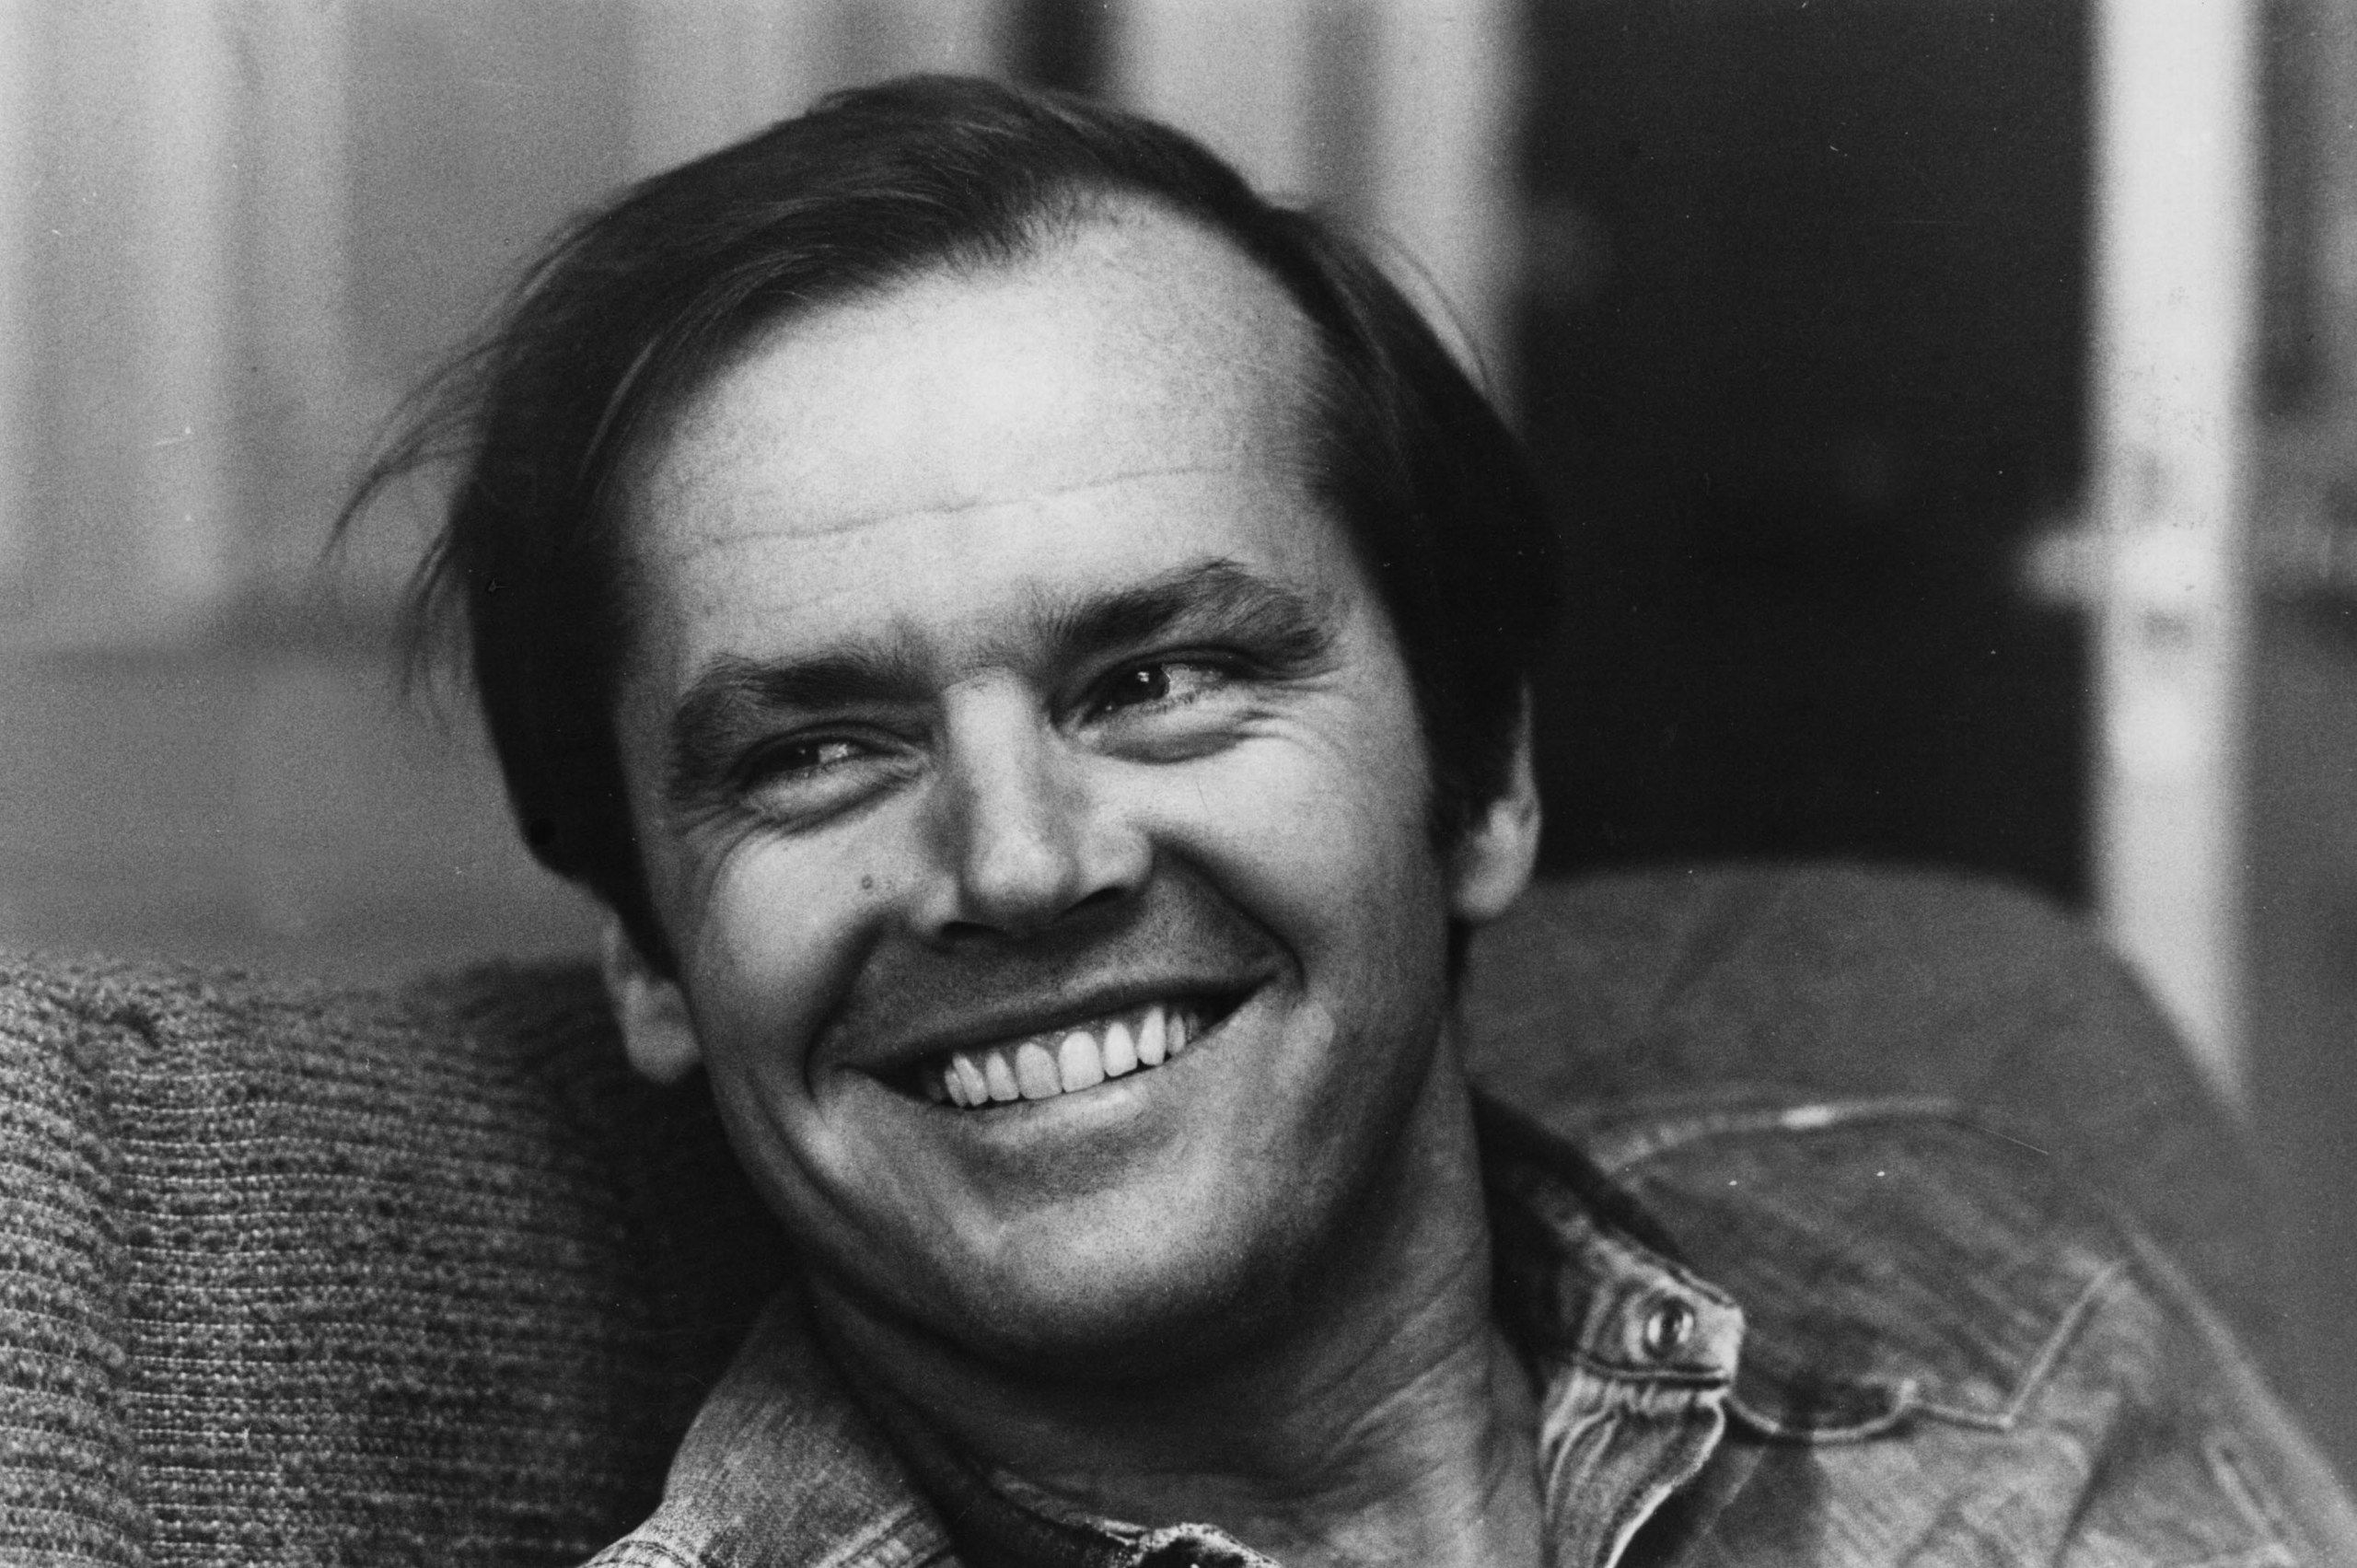 La carriera di Jack Nicholson - immagine 4